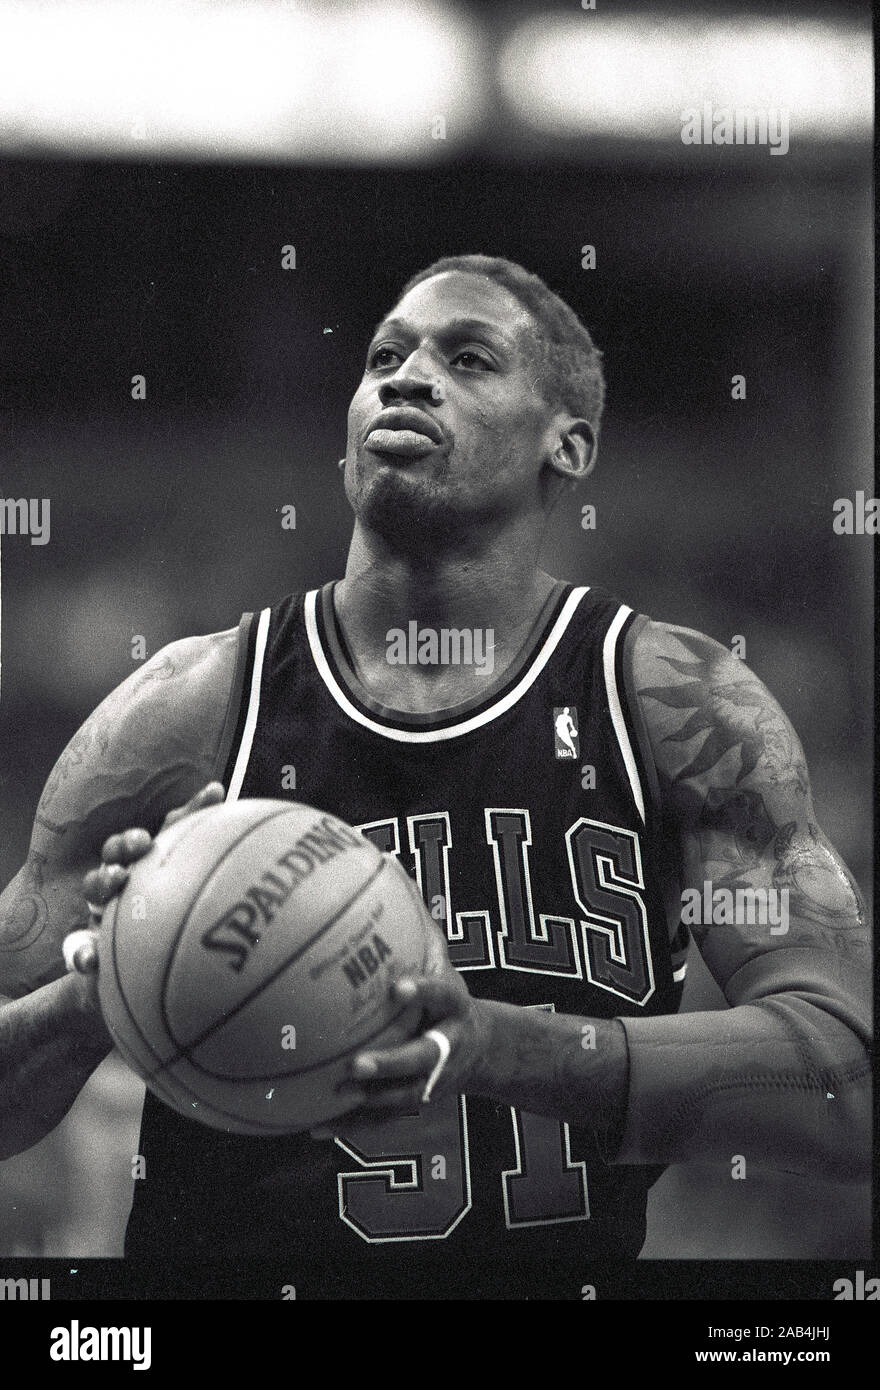 Chicago Bulls Dennis Rodman auf die freie Throwlinie während Basketball Spiel gegen die Boston Celtics im Fleet Center in Boston, Ma USA Saison 1997 Foto von biil Belknap Stockfoto